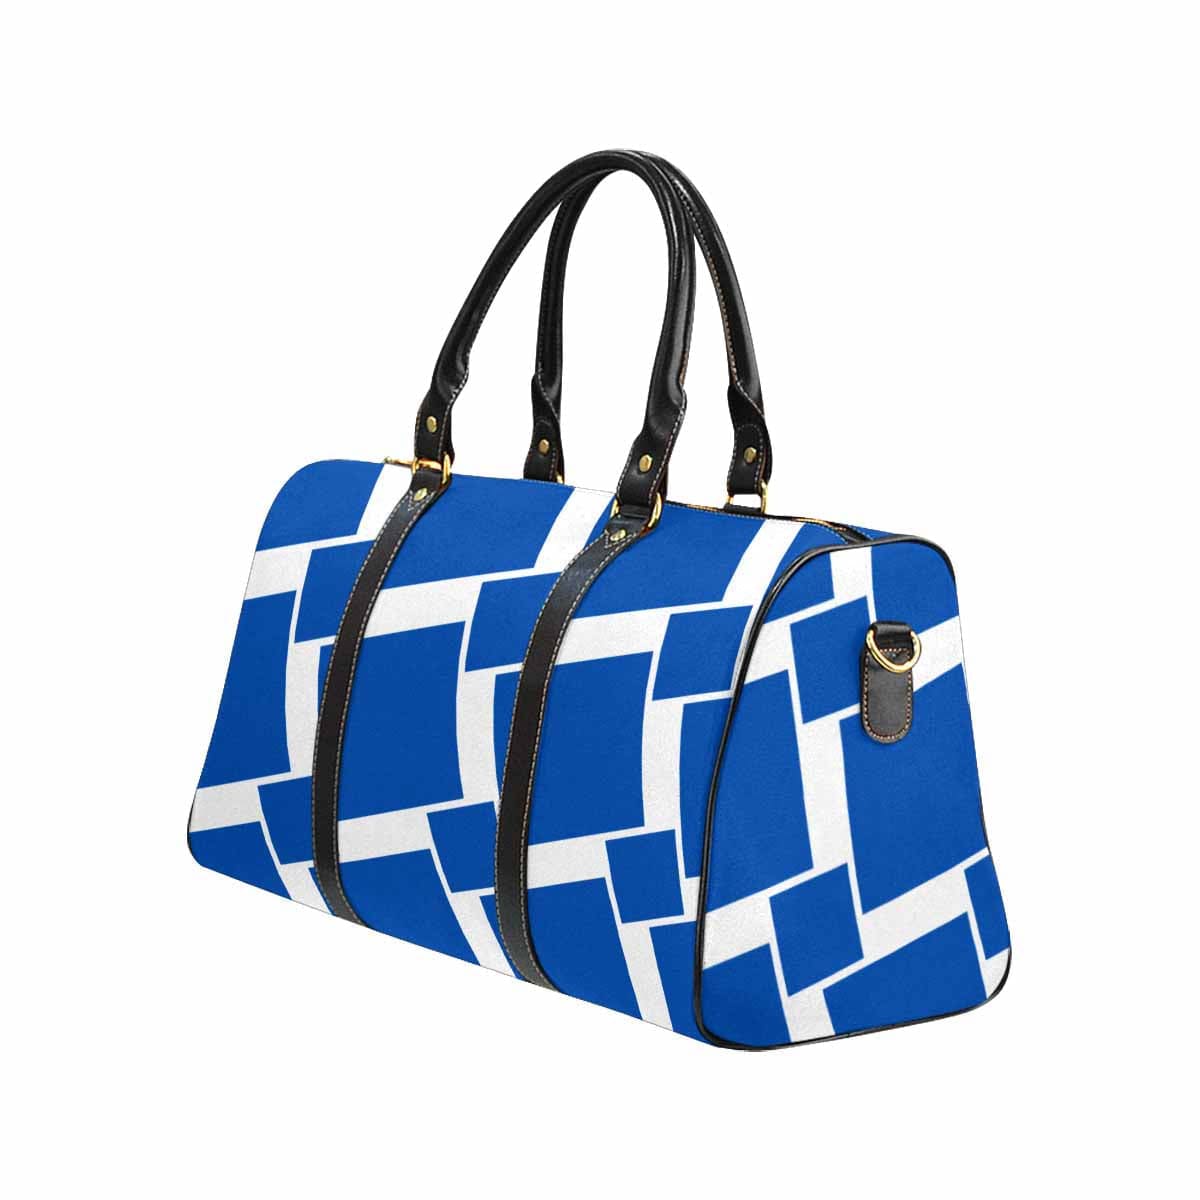 Travel Bag Adjustable Shoulder Strap Carry On Bag Blue Grotto - Bags | Travel